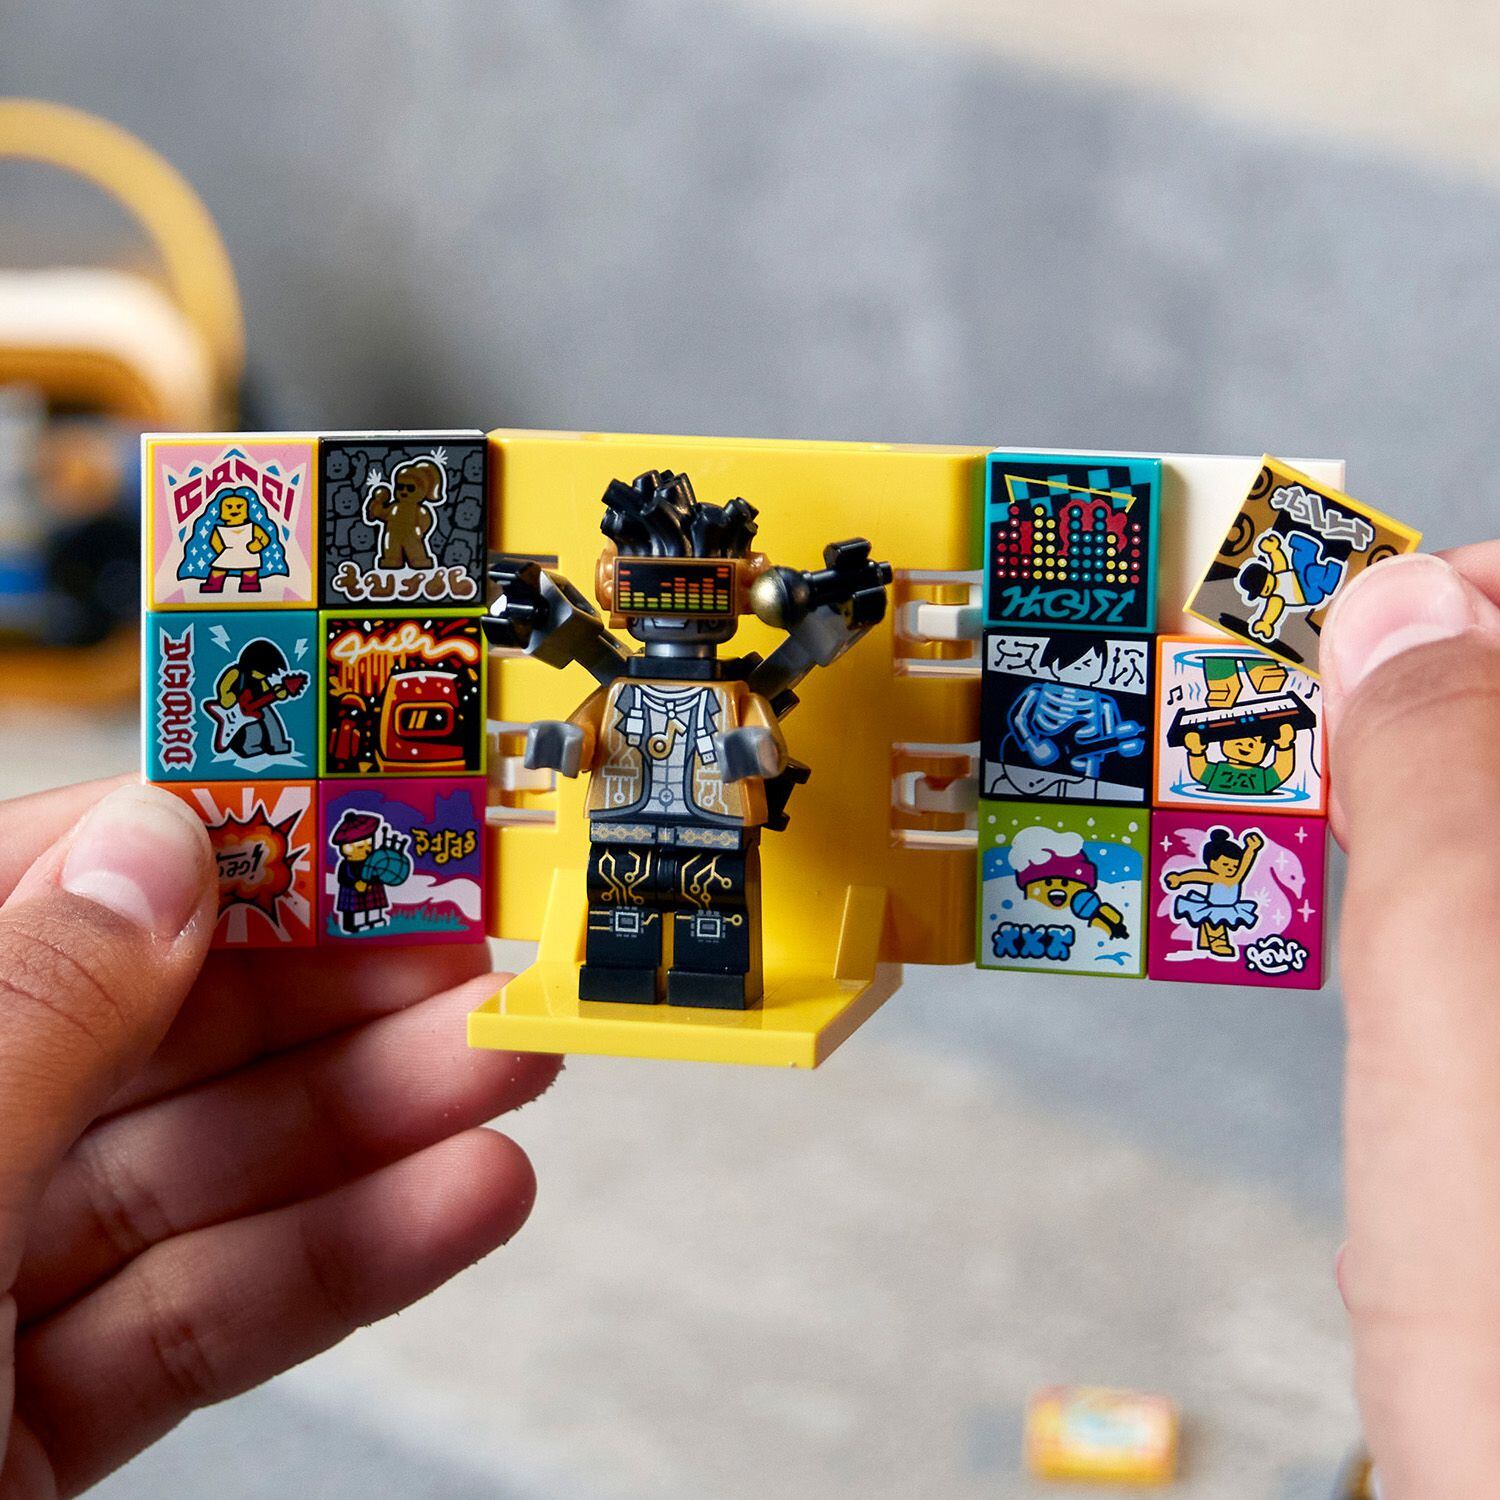 Las pequeñas piezas cuadradas llamadas BeatBits se colocan en los escenarios montados con los ladrillos Lego y activan los efectos digitales al ser escaneados.